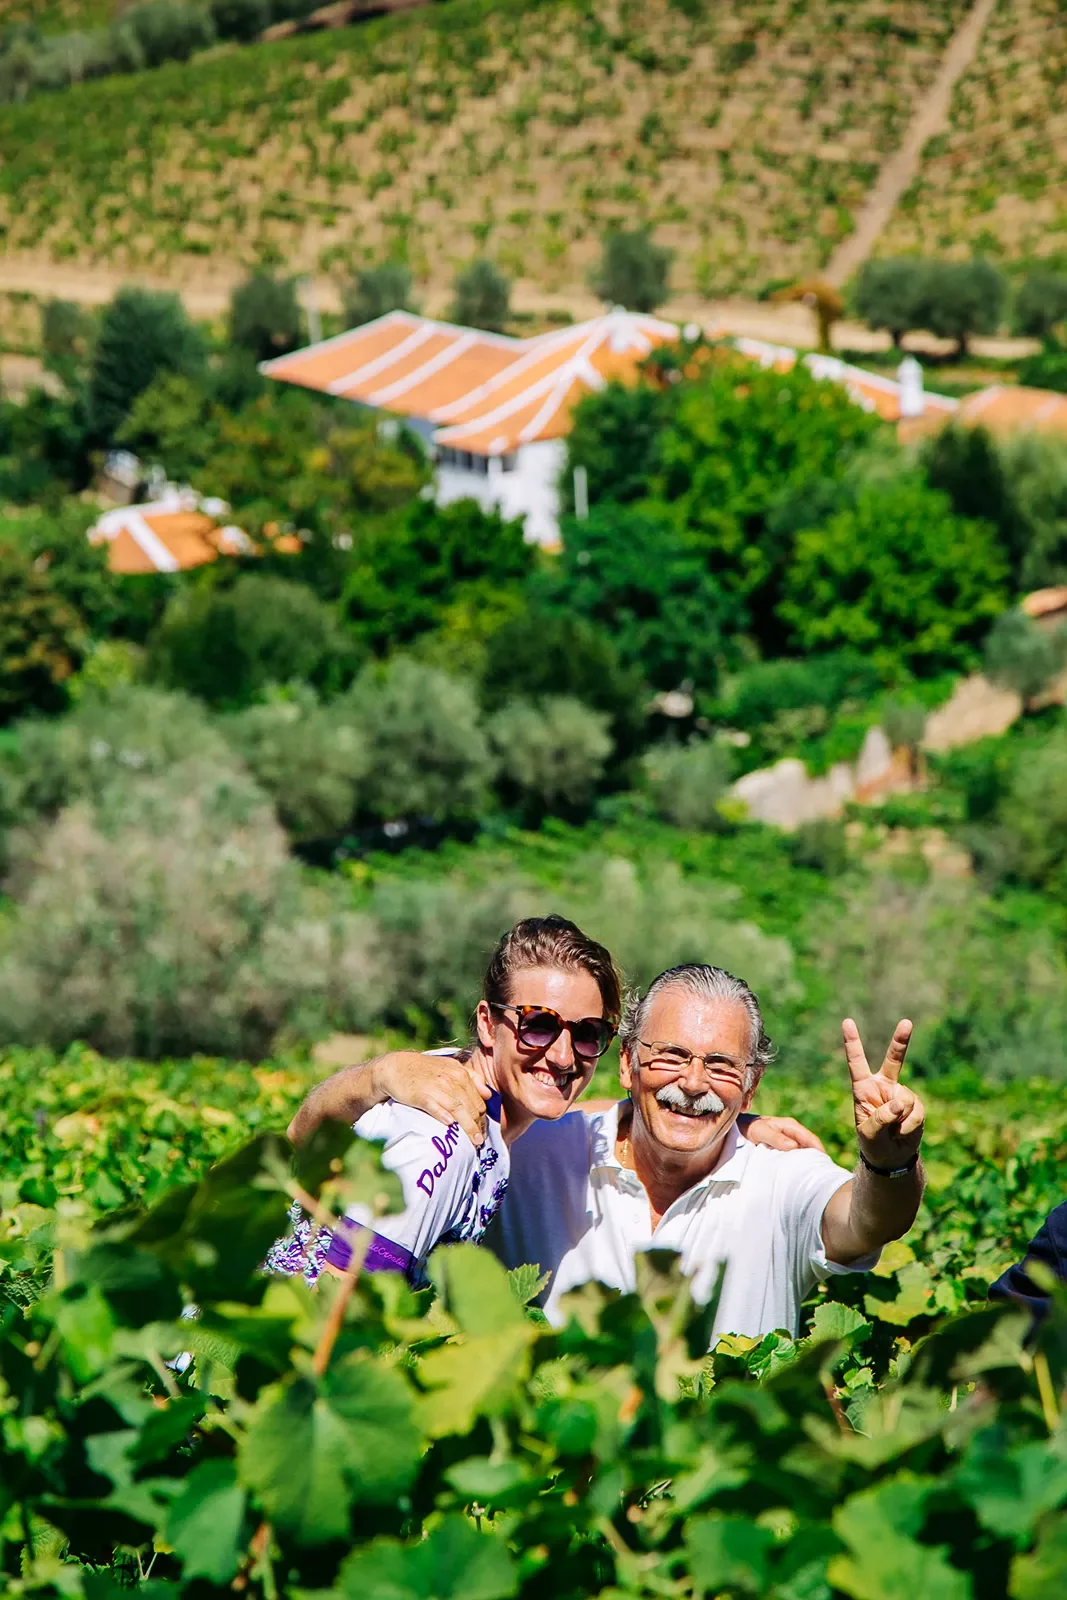 Two people posing in a vineyard.